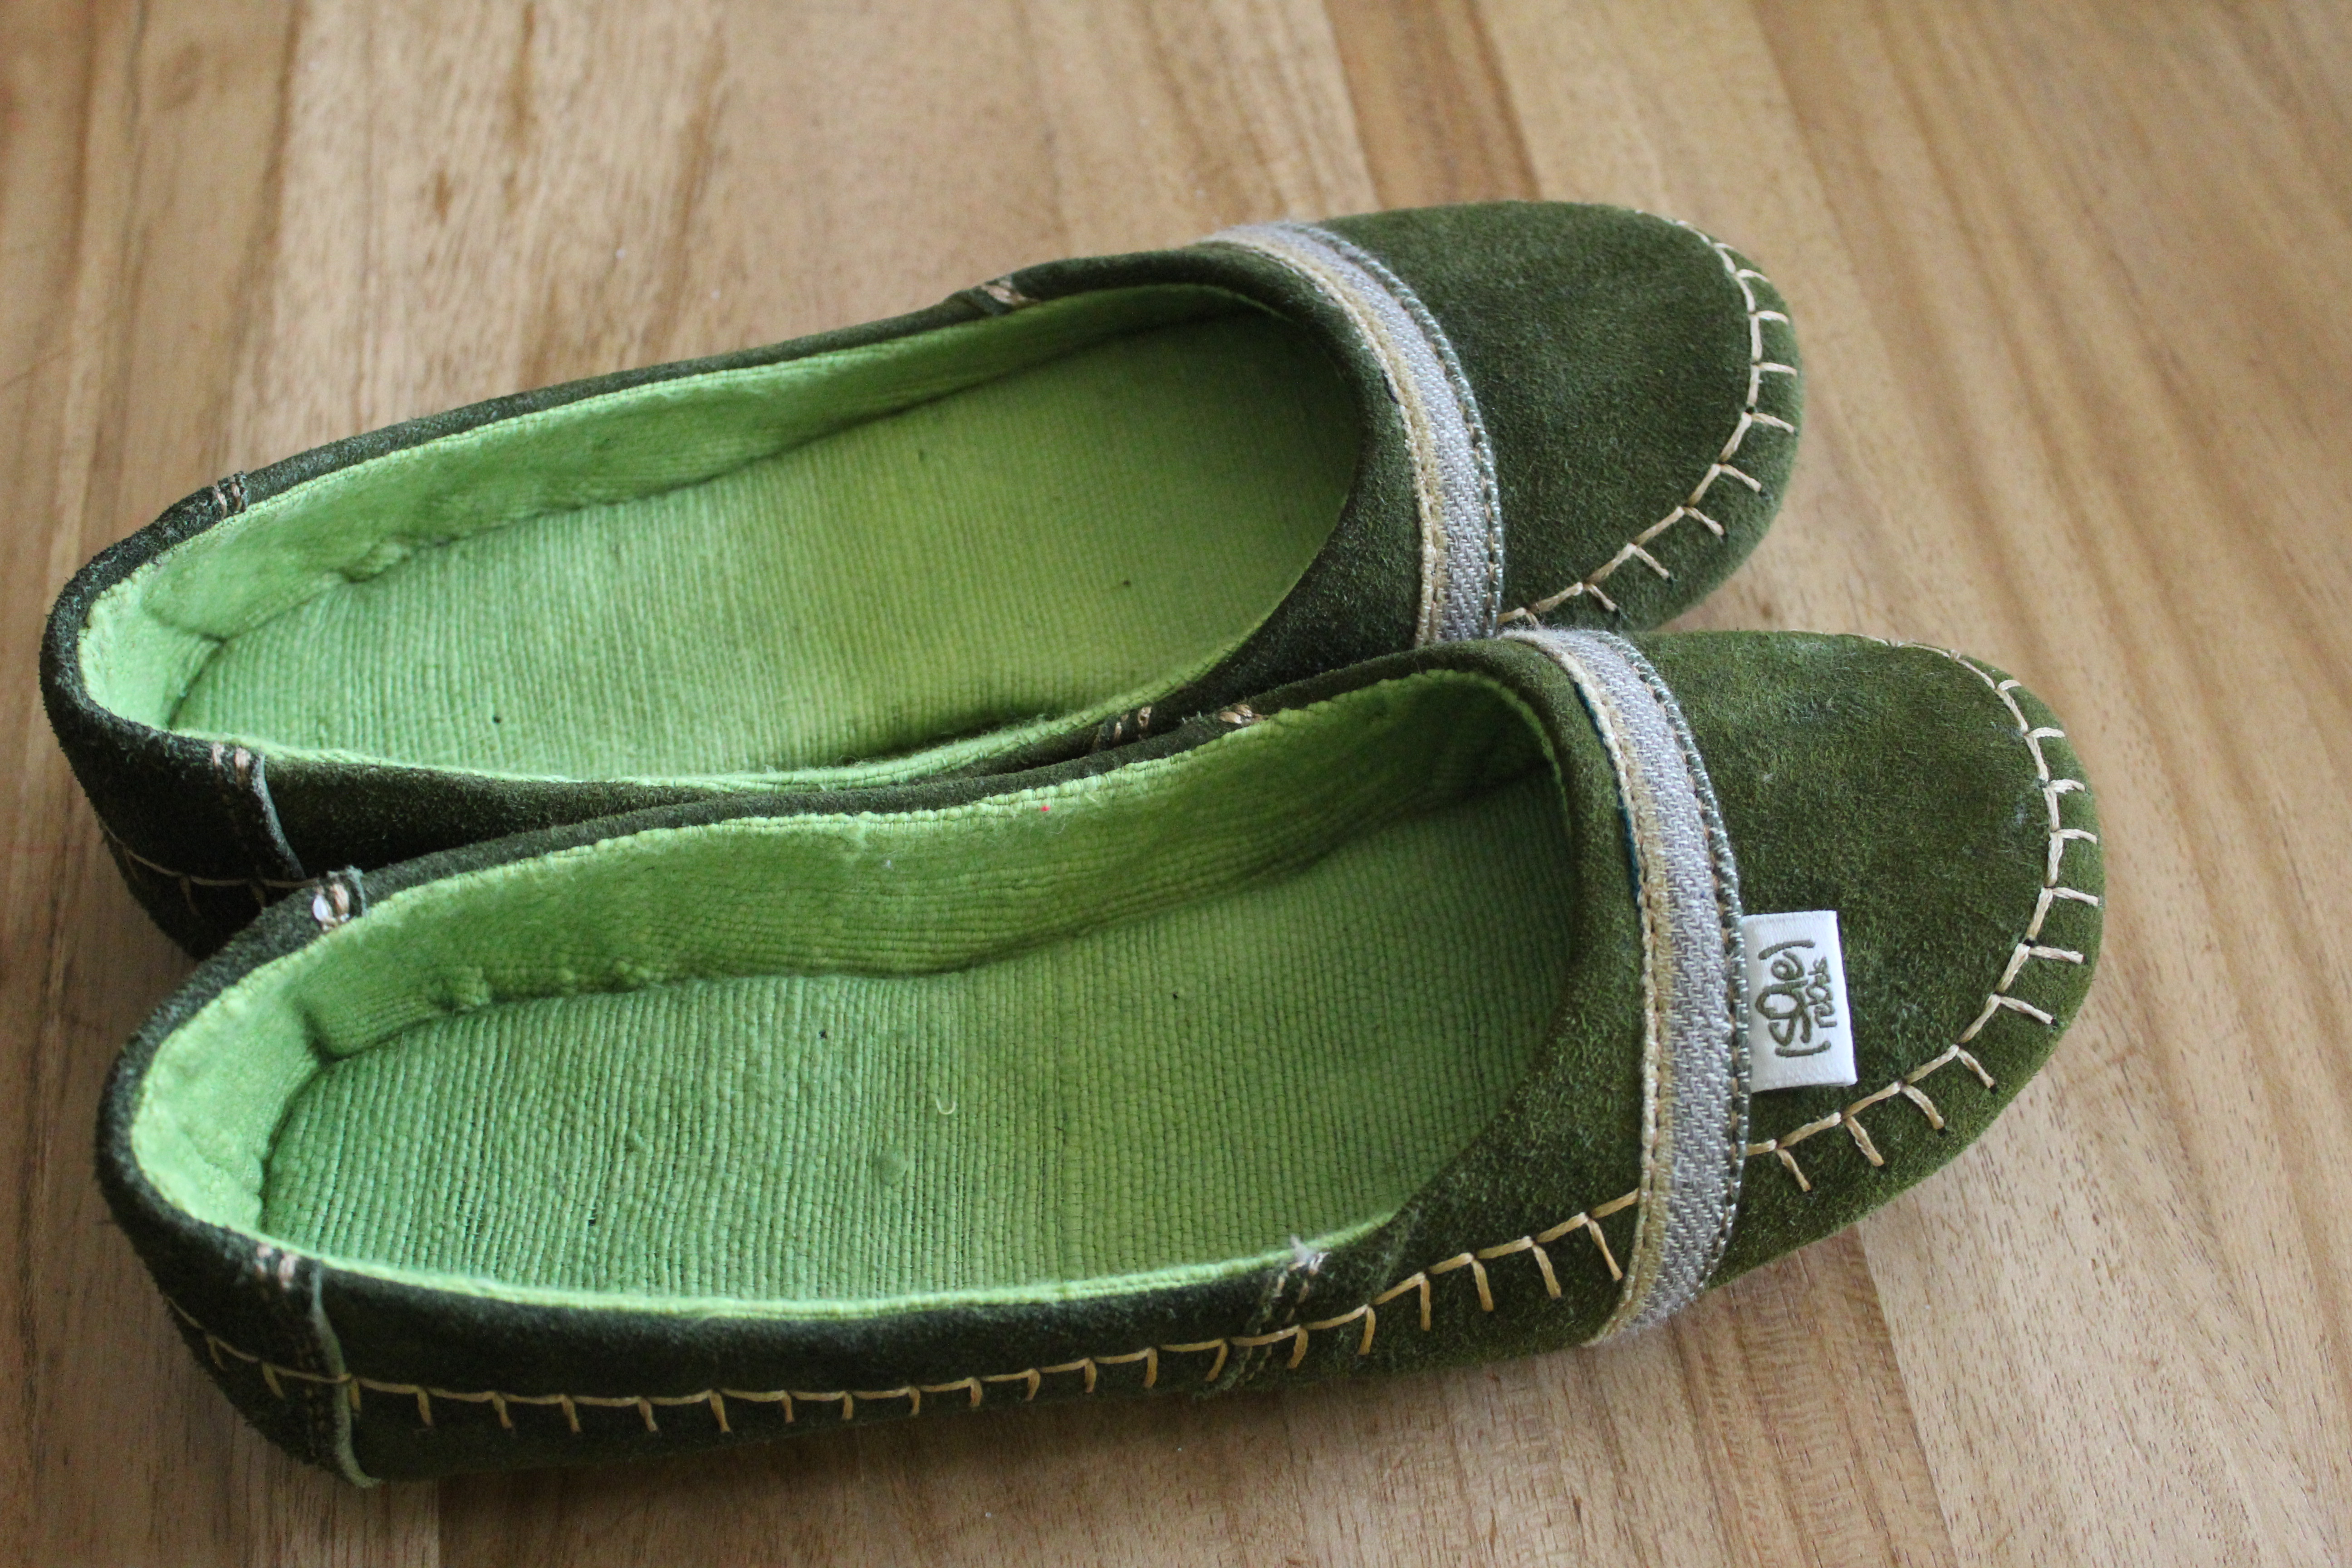 solerebels vegan shoes